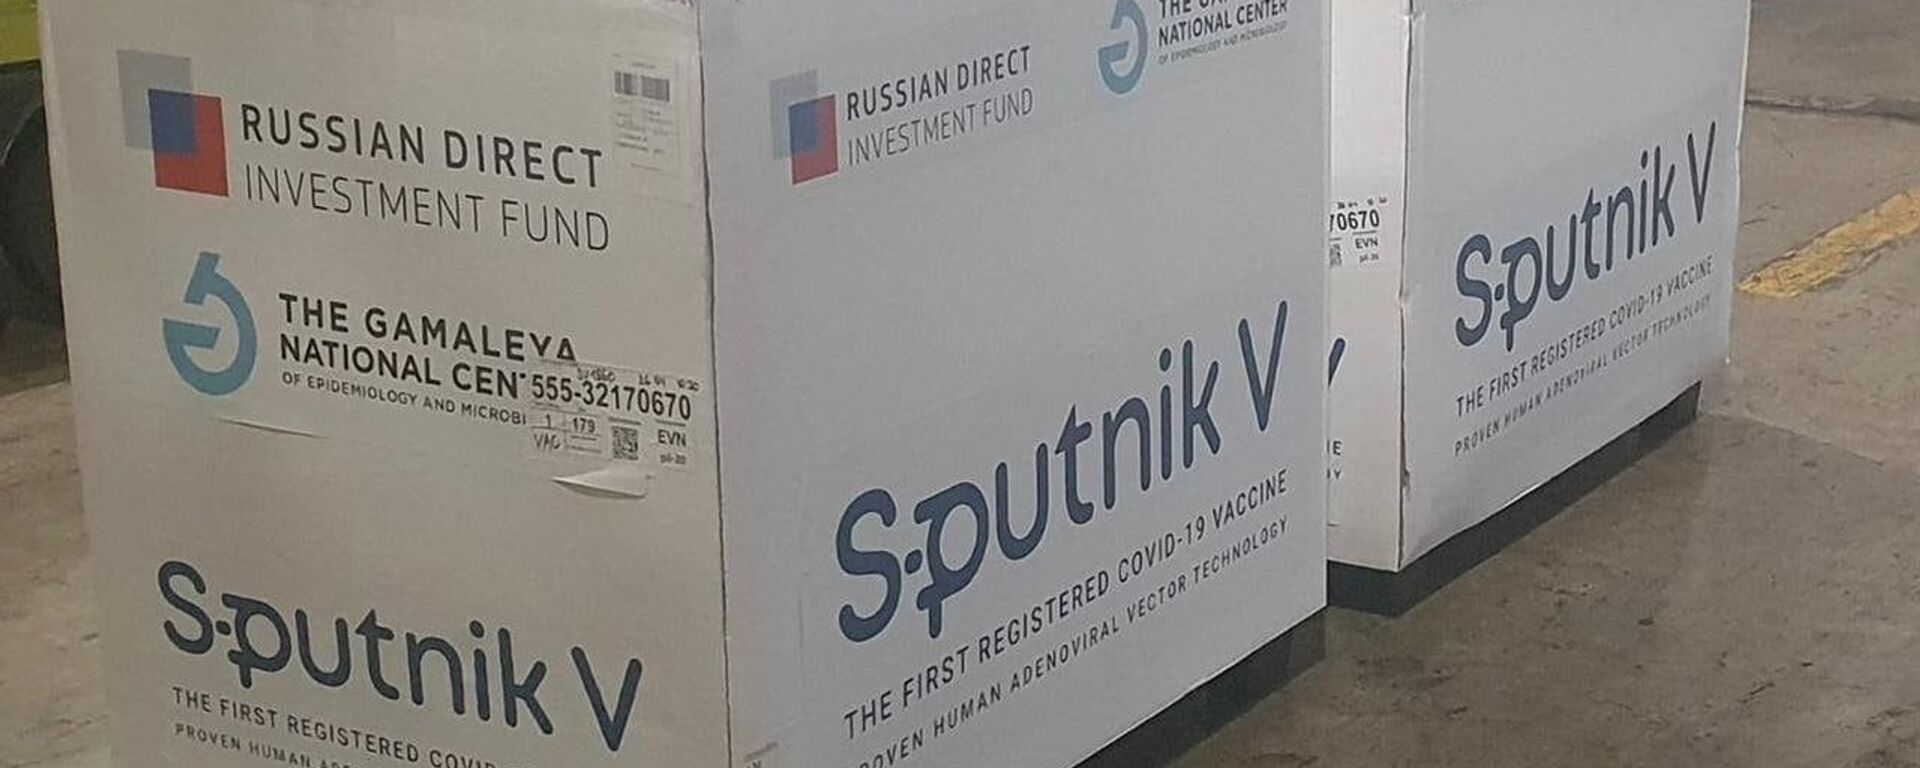 Սպուտնիկ V պատվաստանյութի հերթական խմբաքանակը հասել է Հայաստան - Sputnik Արմենիա, 1920, 30.08.2021